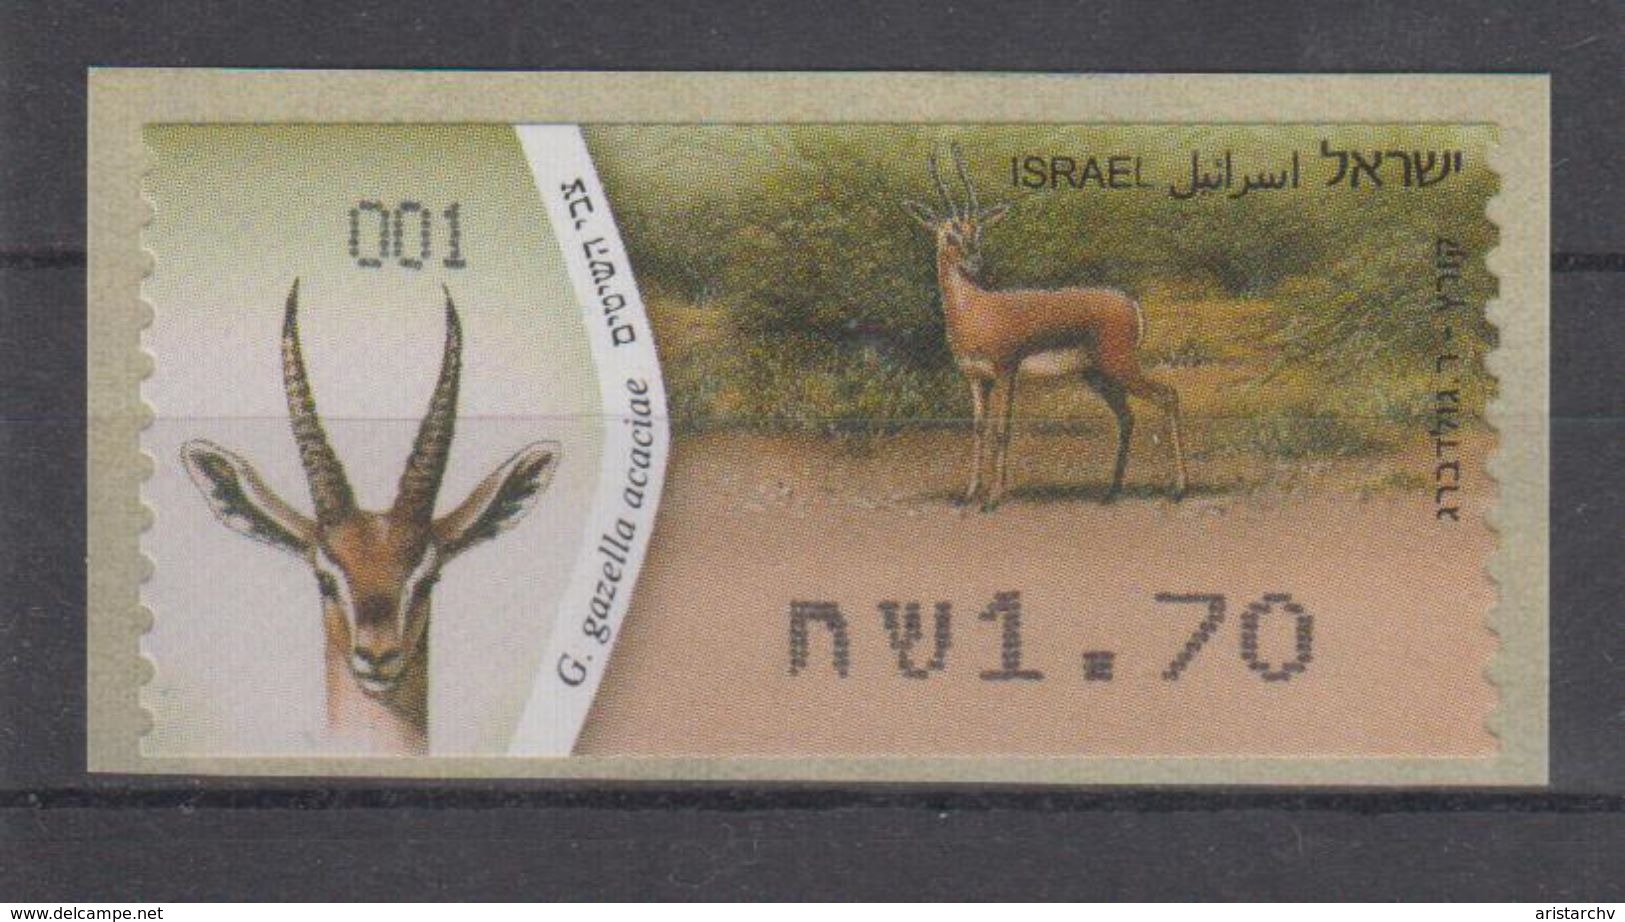 ISRAEL 2011 KLUSSENDORF ATM DEER GAZELLA - Vignettes D'affranchissement (Frama)